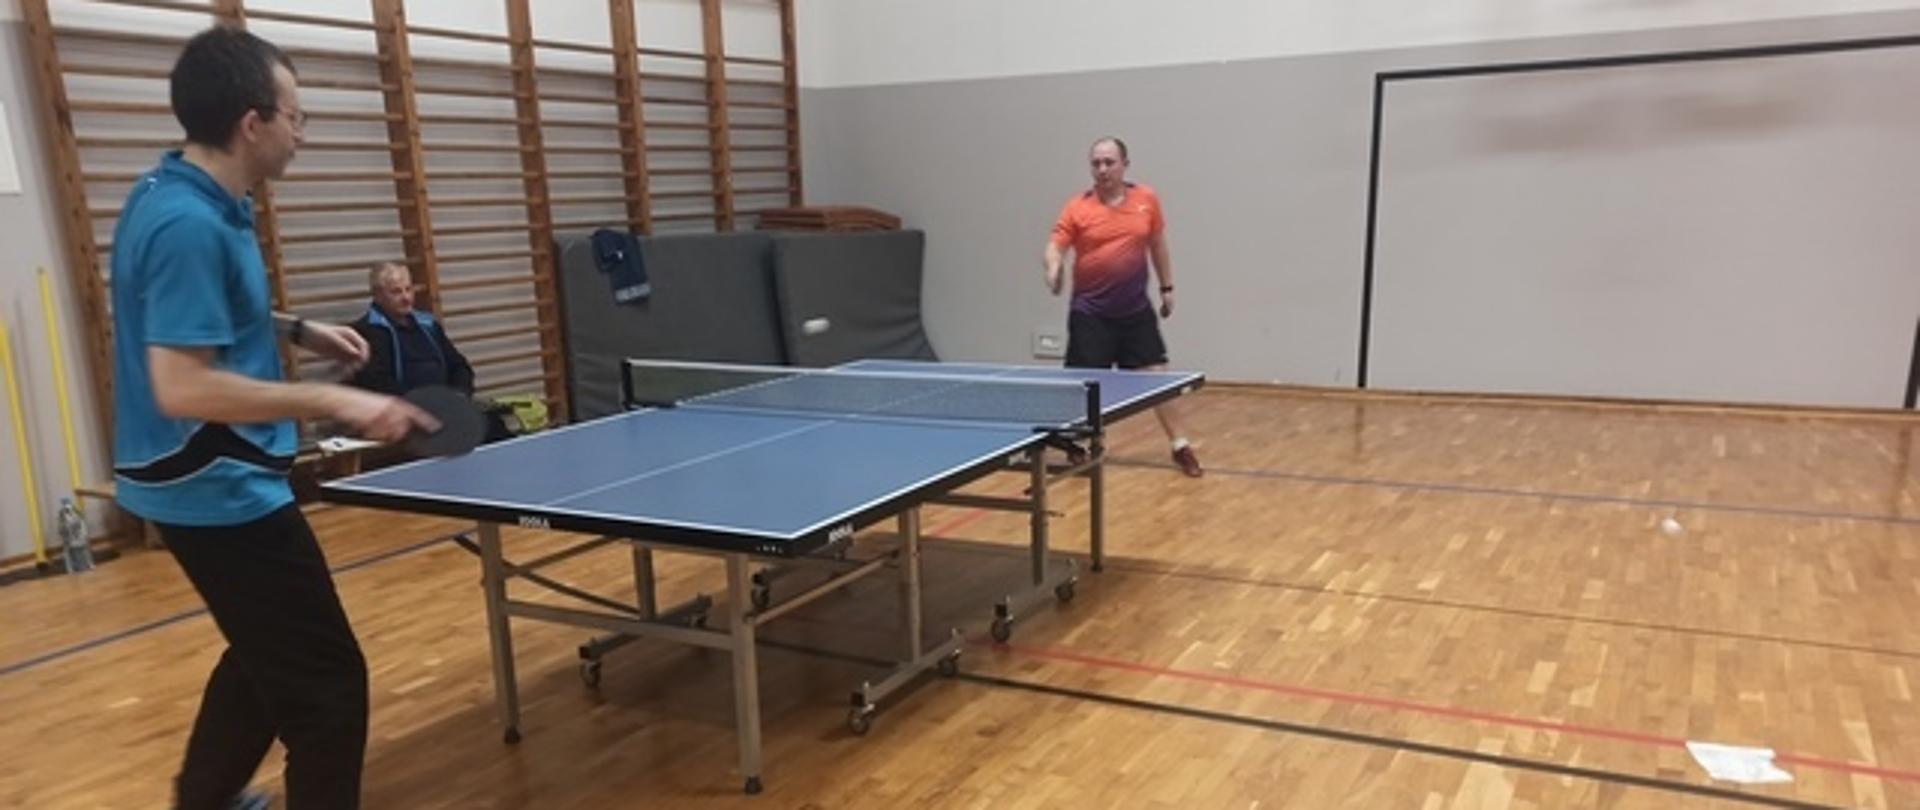 Akcja meczowa - dwóch mężczyzn przy stole tenisowym